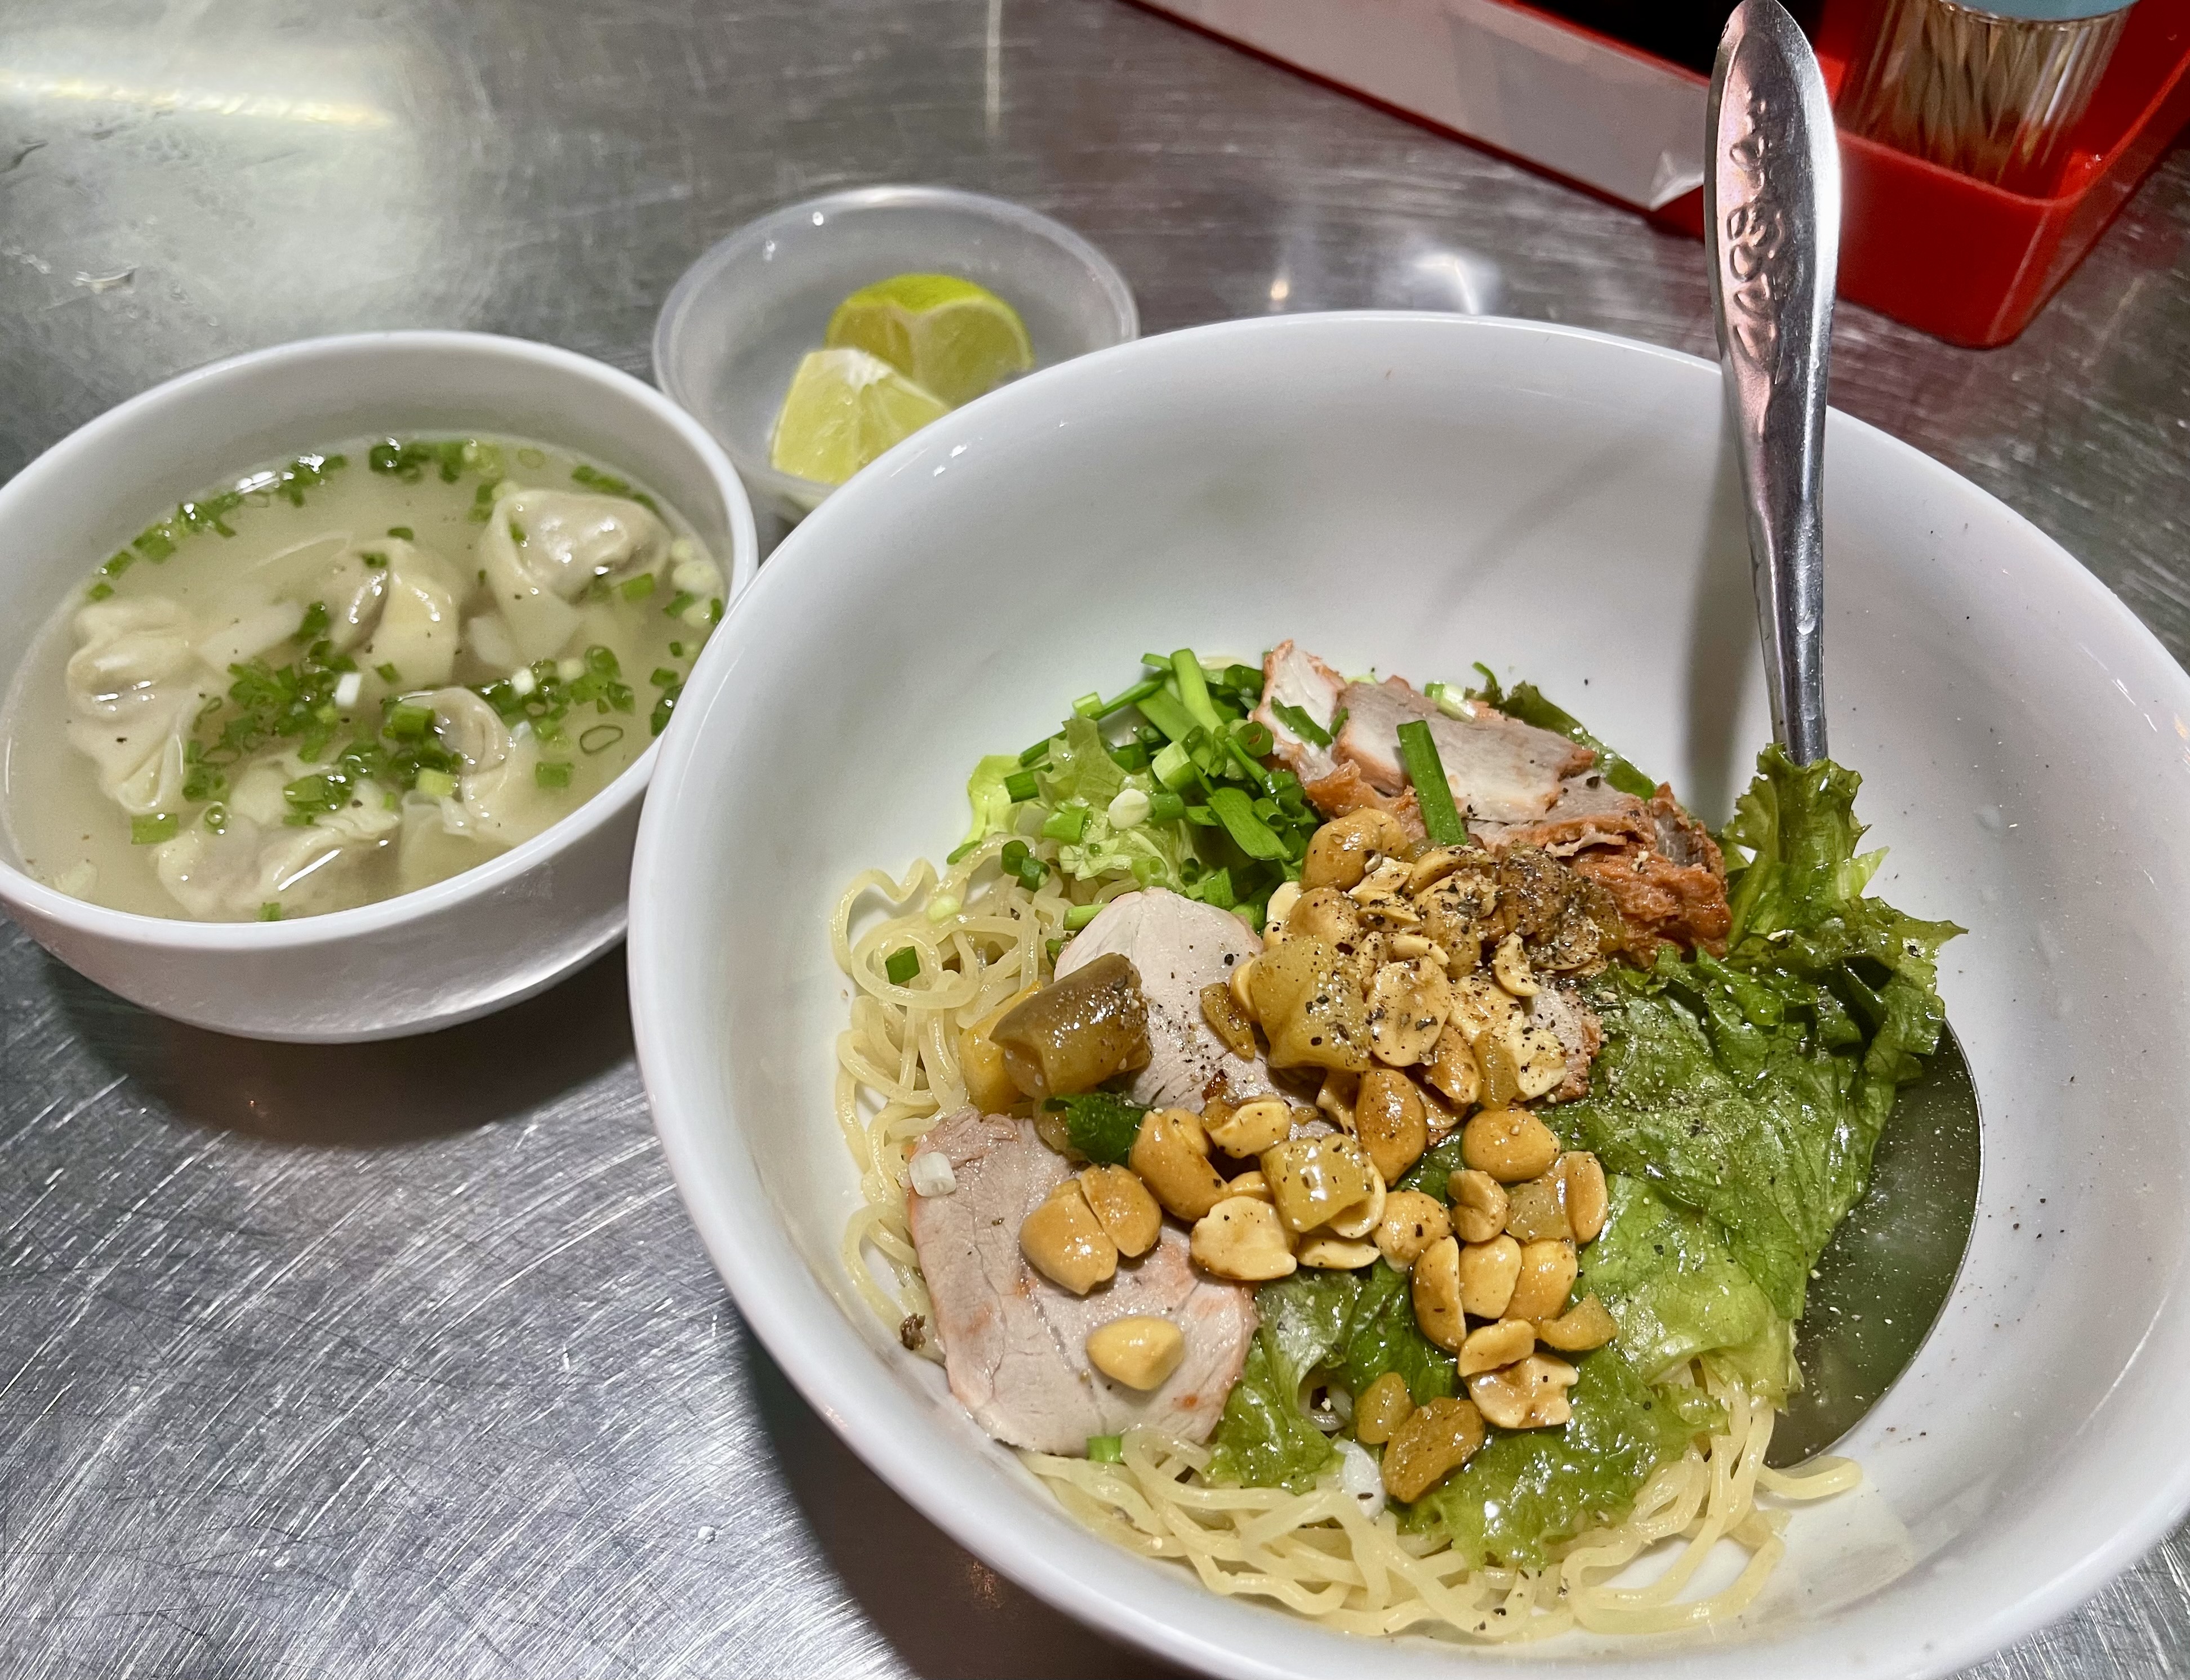 Mi Hu Tieu: A man named ‘New’ sells old noodles